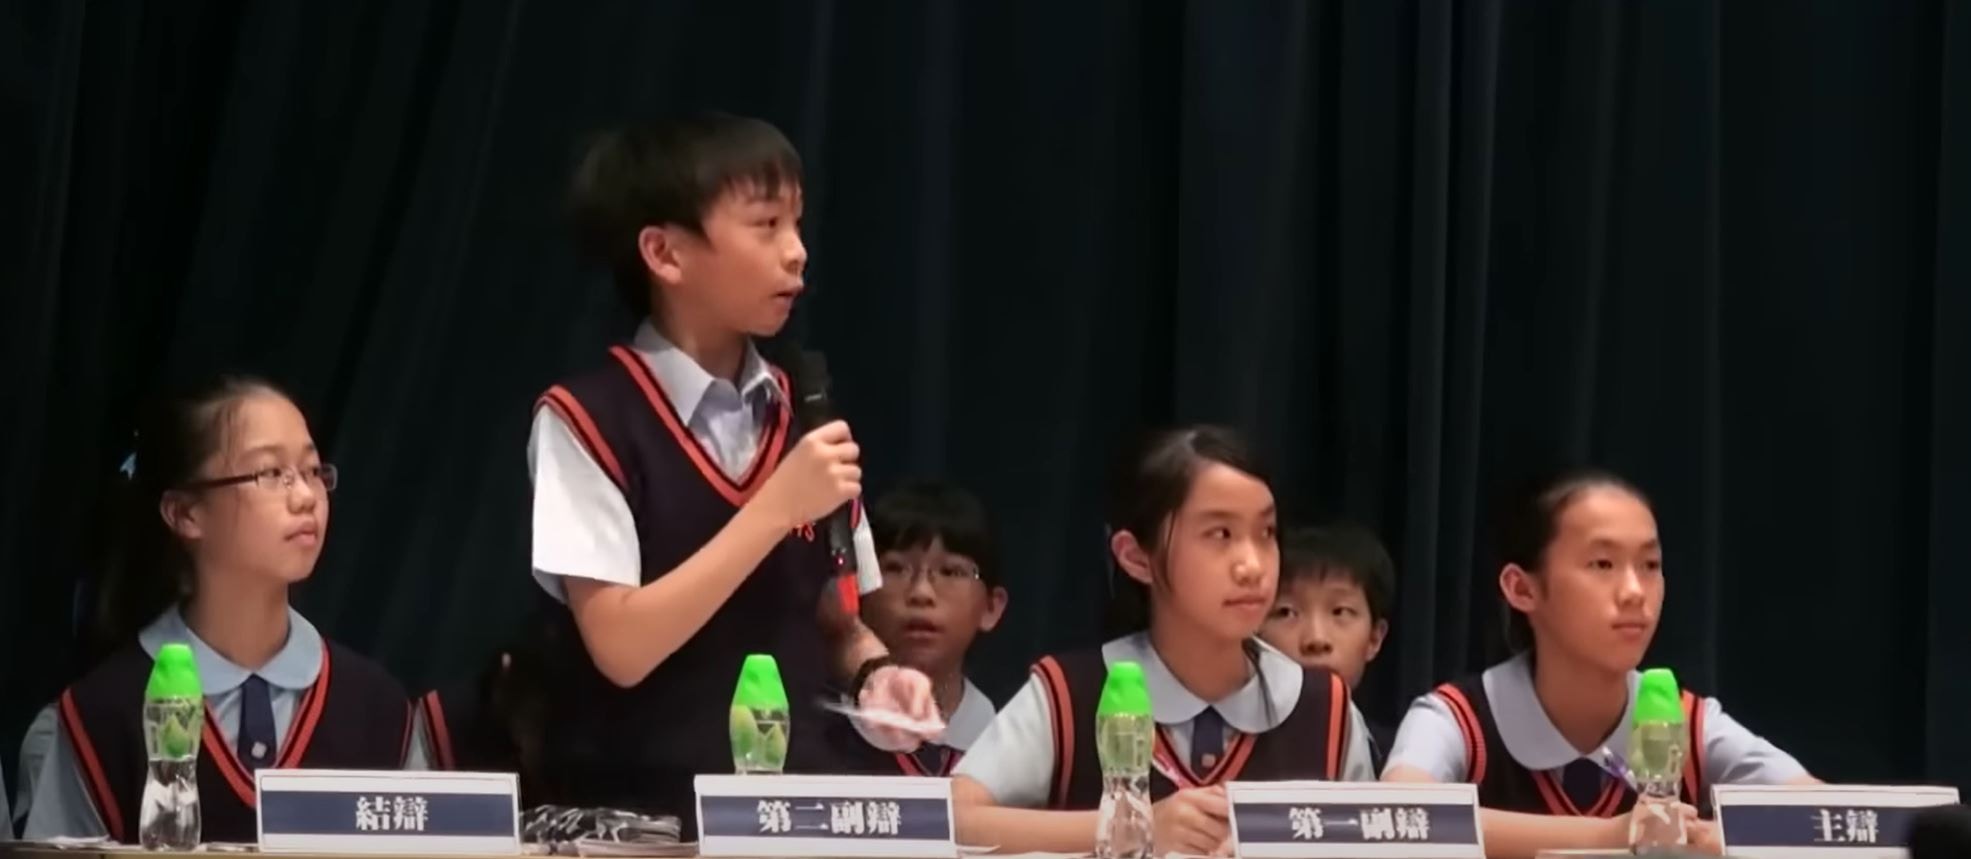 双方正进行自由辩论环节，陈姓男生担任正方第二副辩，说出自己理据。（YouTube频道「idebate.HK」 影片截图)